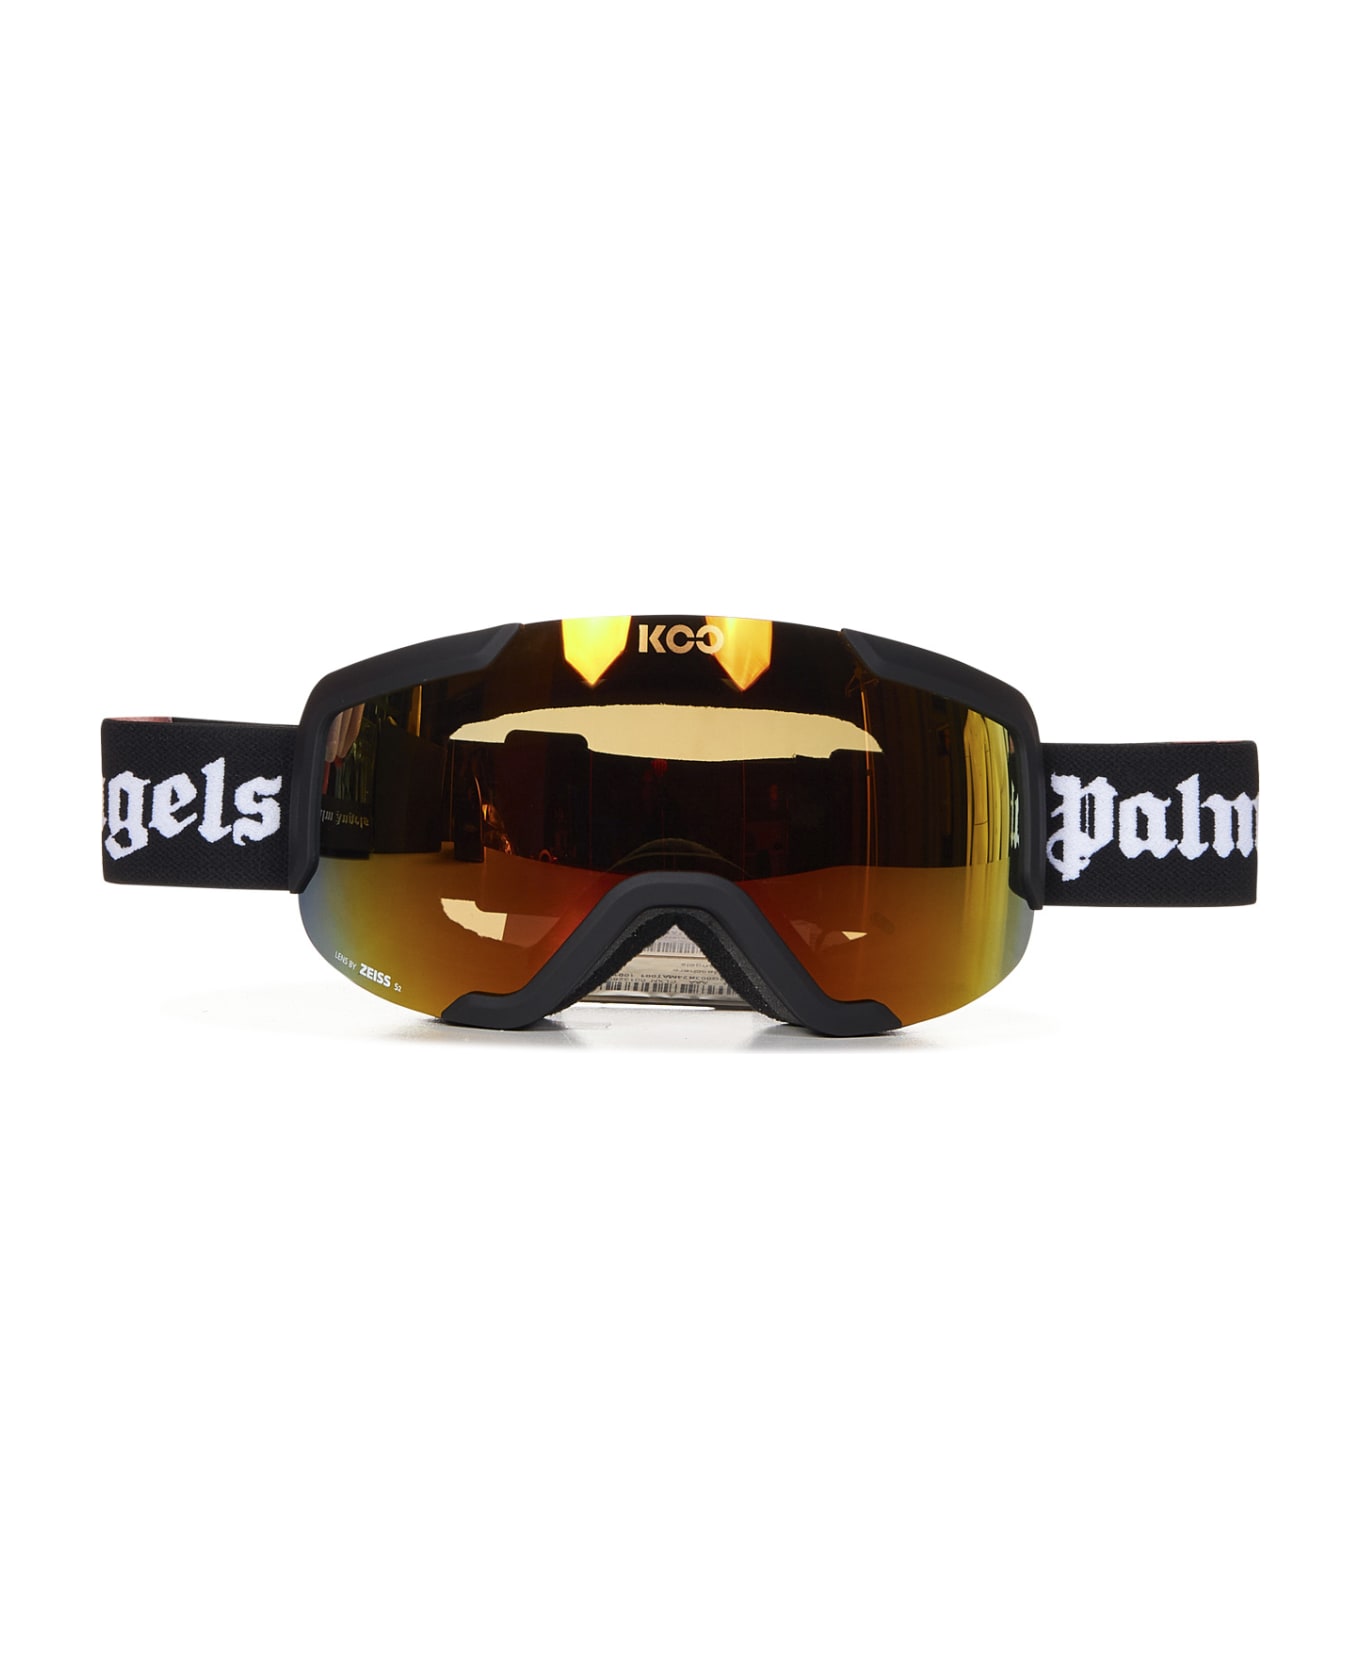 Palm Angels Sunglasses - Black